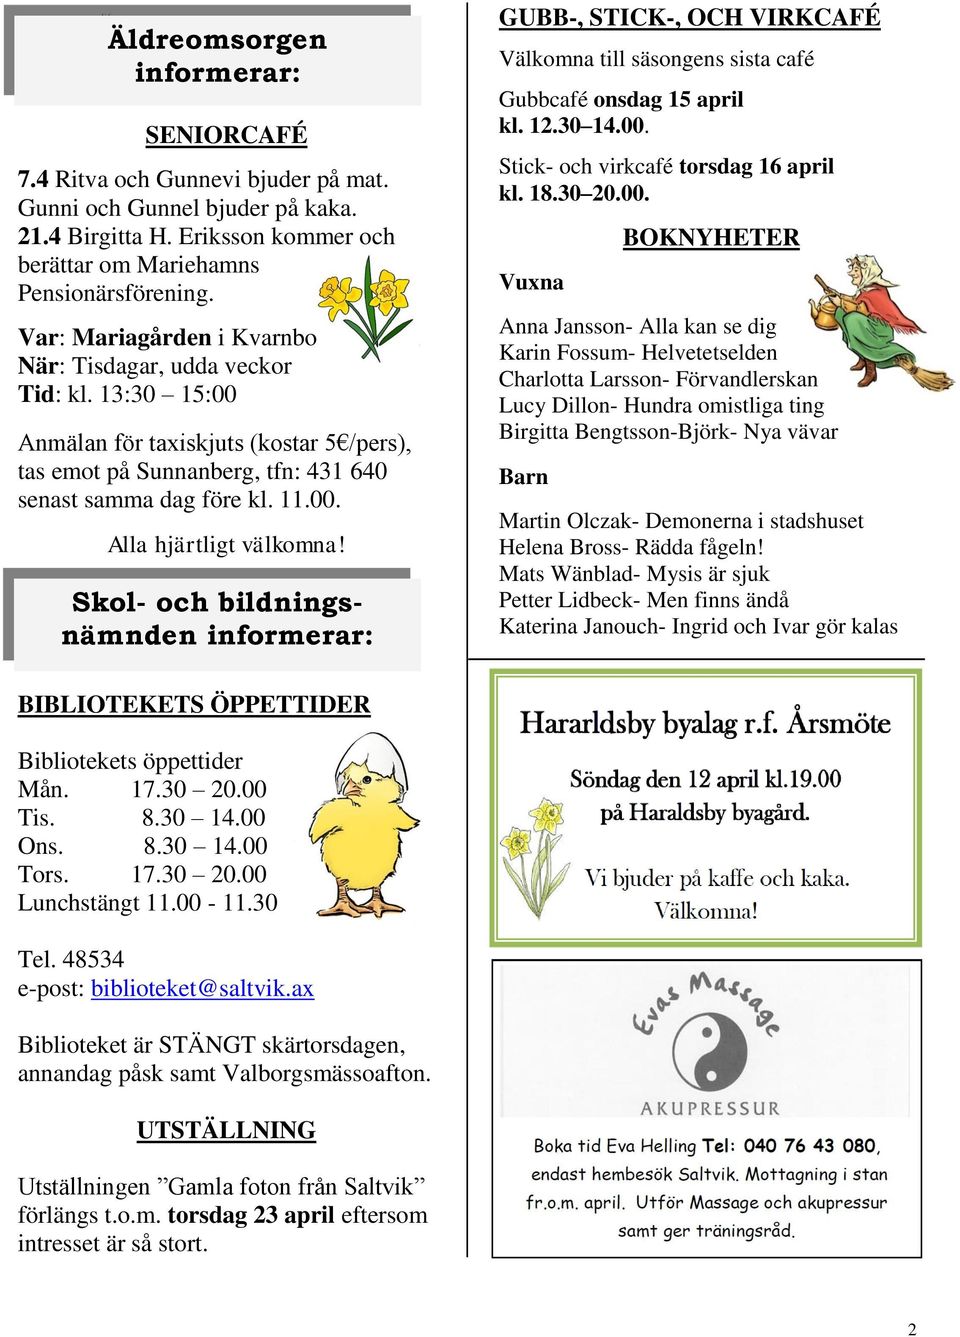 Skol- och bildningsnämnden GUBB-, STICK-, OCH VIRKCAFÉ Välkomna till säsongens sista café Gubbcafé onsdag 15 april kl. 12.30 14.00.